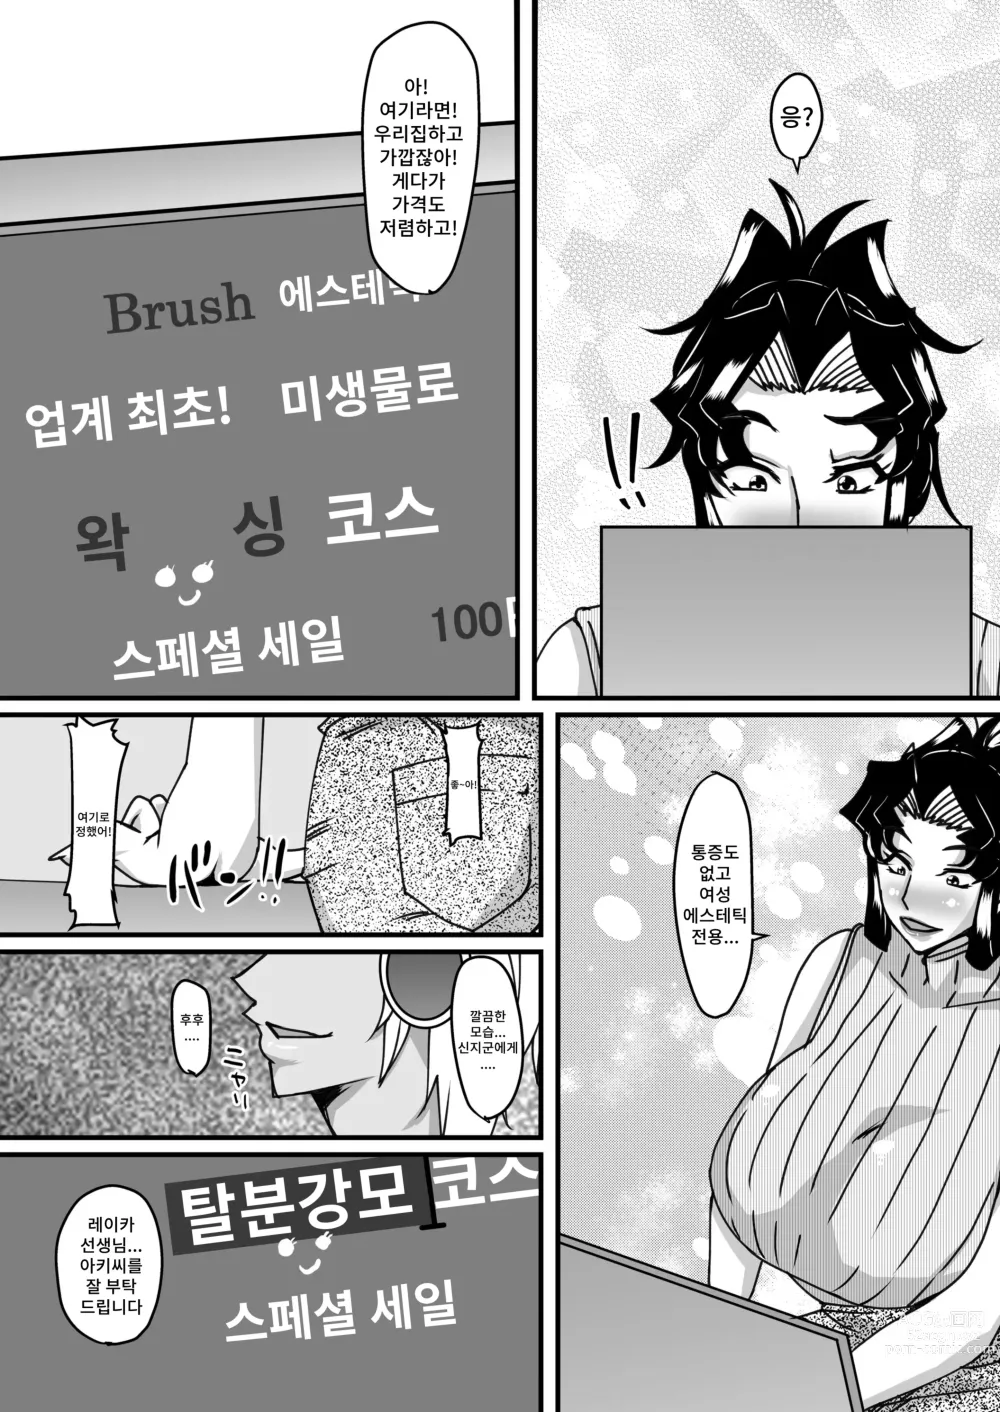 Page 5 of doujinshi 레이카 선생님의 음란충 똥구멍 에스테틱